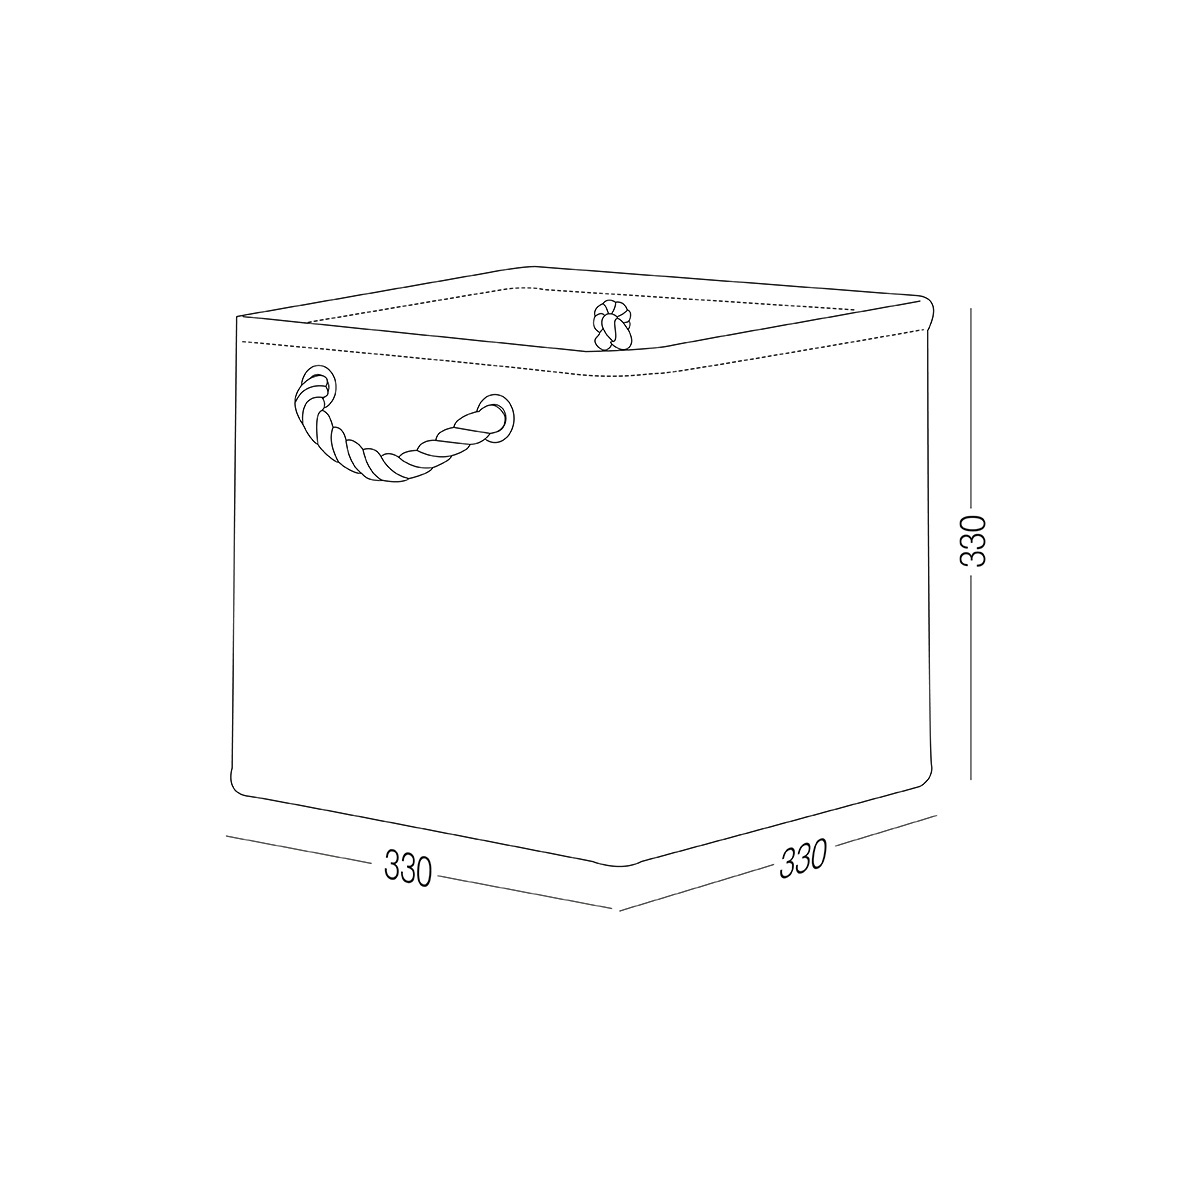 Ящик для хранения MVM тканевый серый 330x330x330 TH-12 L GRAY